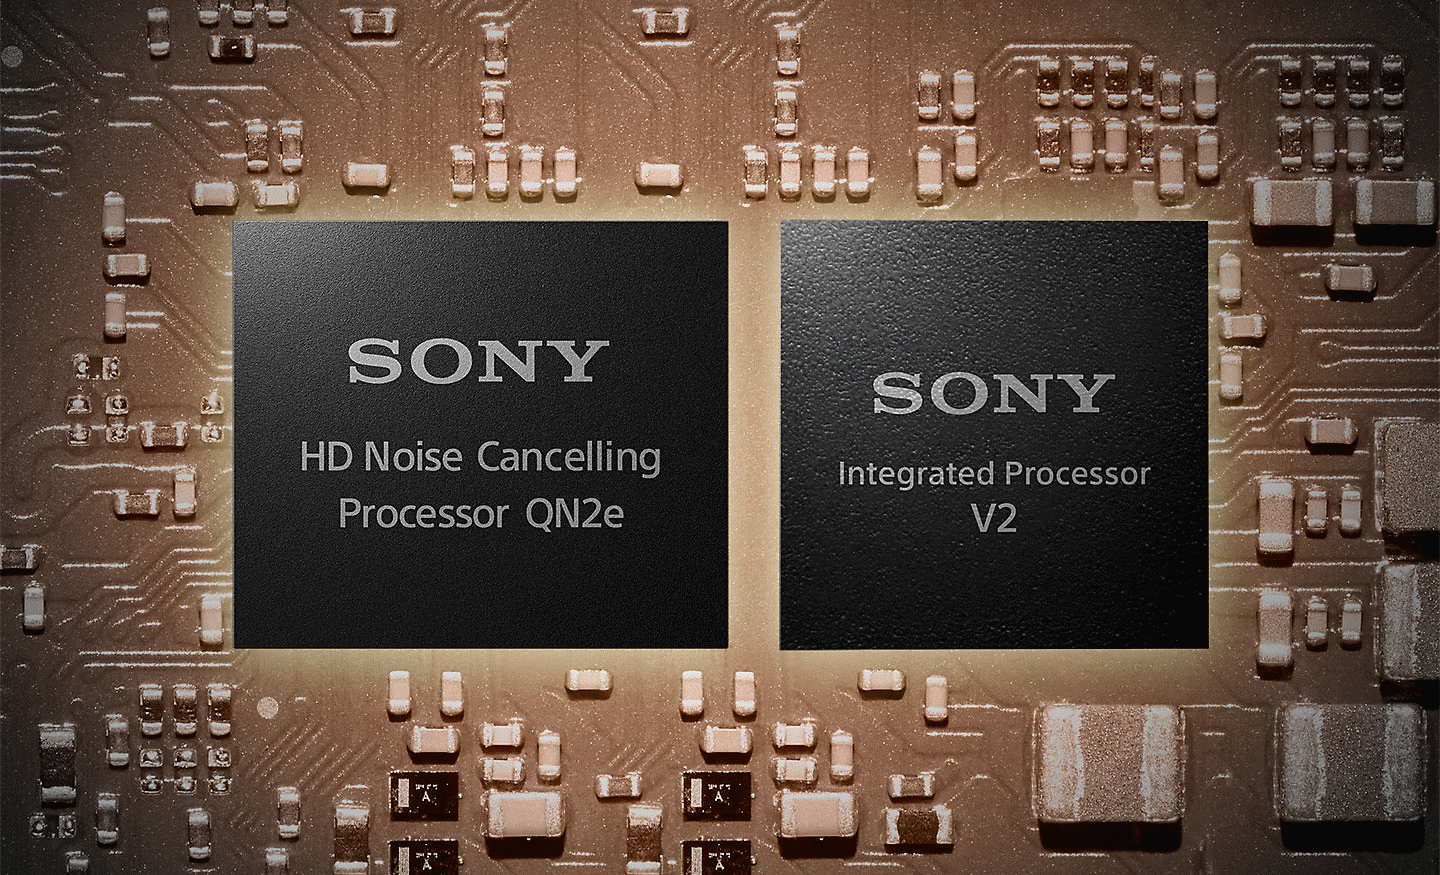 Зображення двох процесорів на материнській платі, лівий - процесор з шумом придушення HD, а правий - вбудований процесор V2